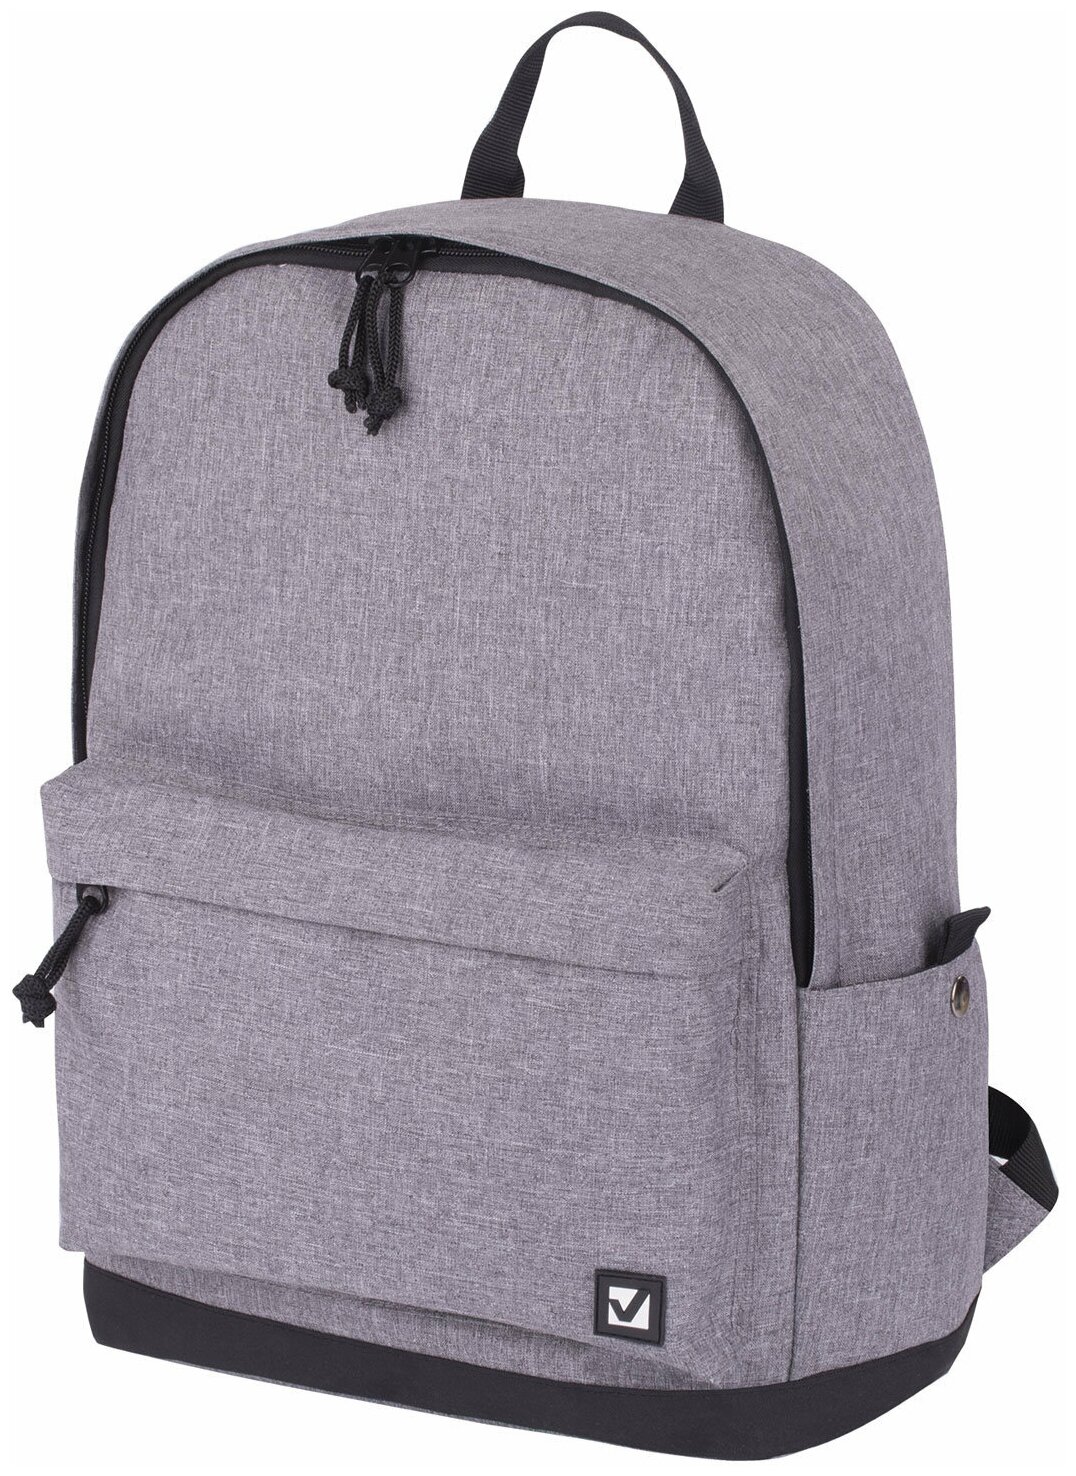 Рюкзак BRAUBERG HIGH SCHOOL универсальный, 3 отделения, Осень, серый, 46х31х18 см, 225518